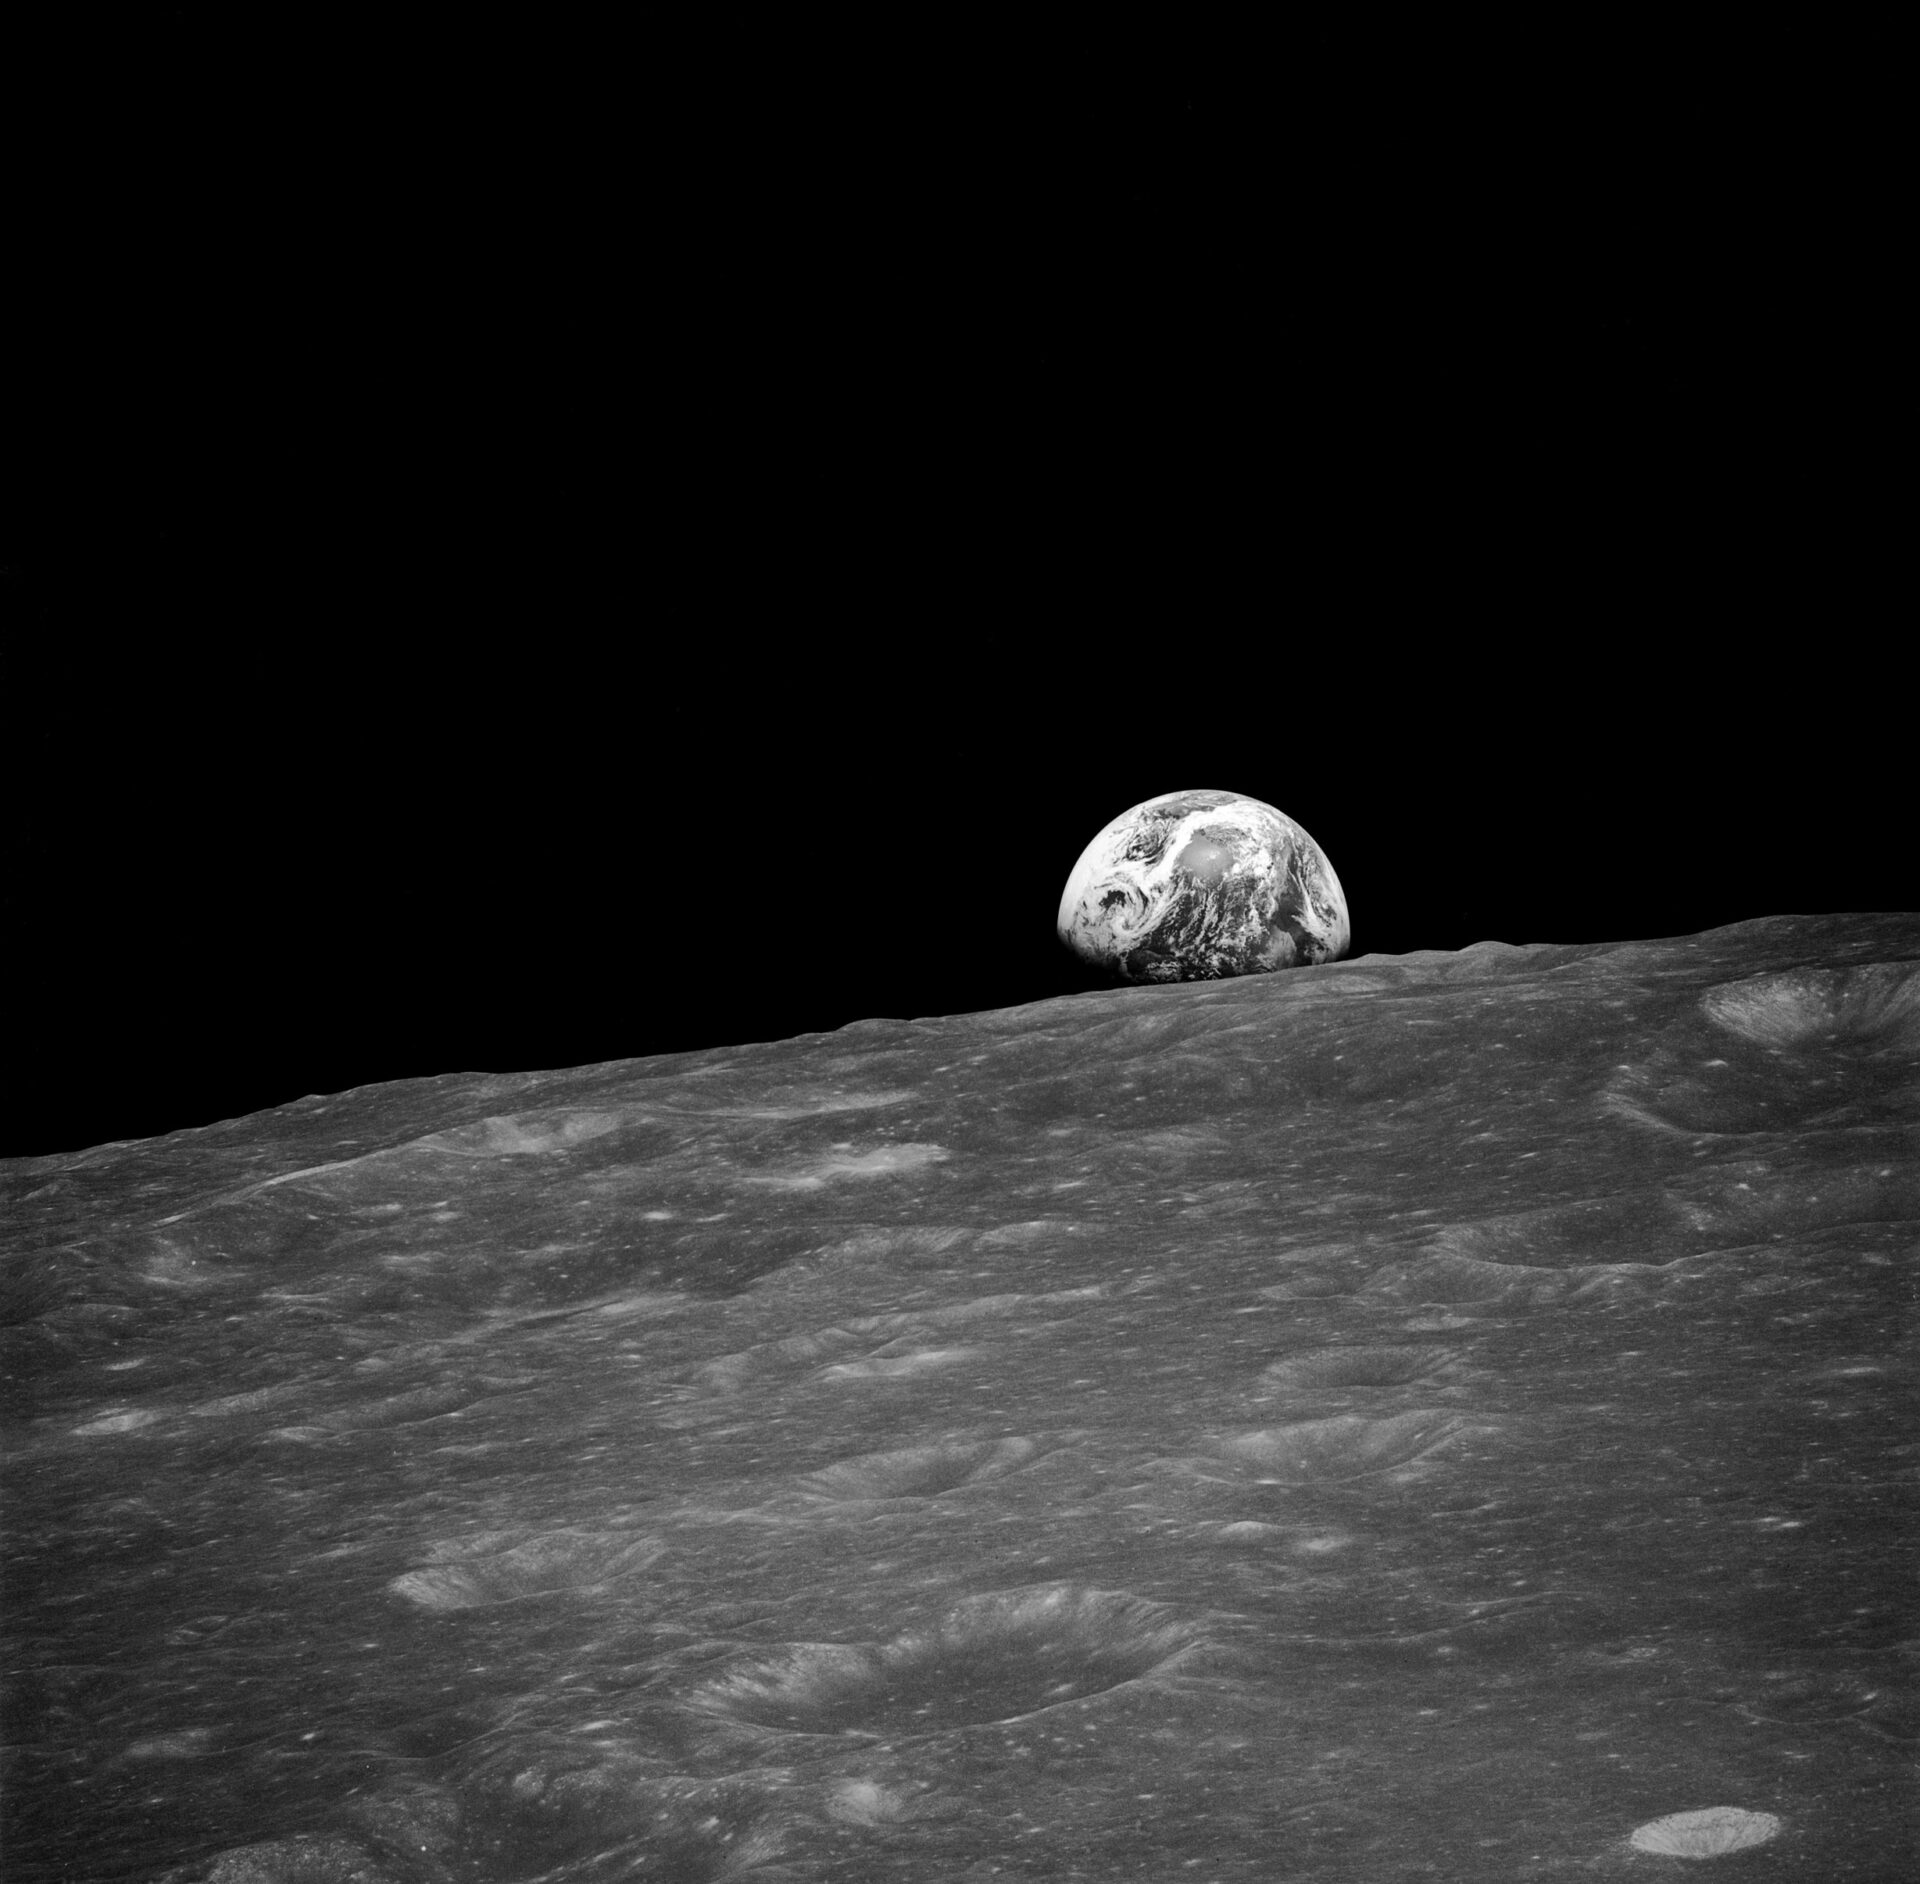 Pierwsze w historii zdjęcie Ziemi wykonane przez człowieka z perspektywy Księżyca, fot. wikimedia, domena publiczna, https://upload.wikimedia.org/wikipedia/commons/0/09/AS08-13-2329.jpg